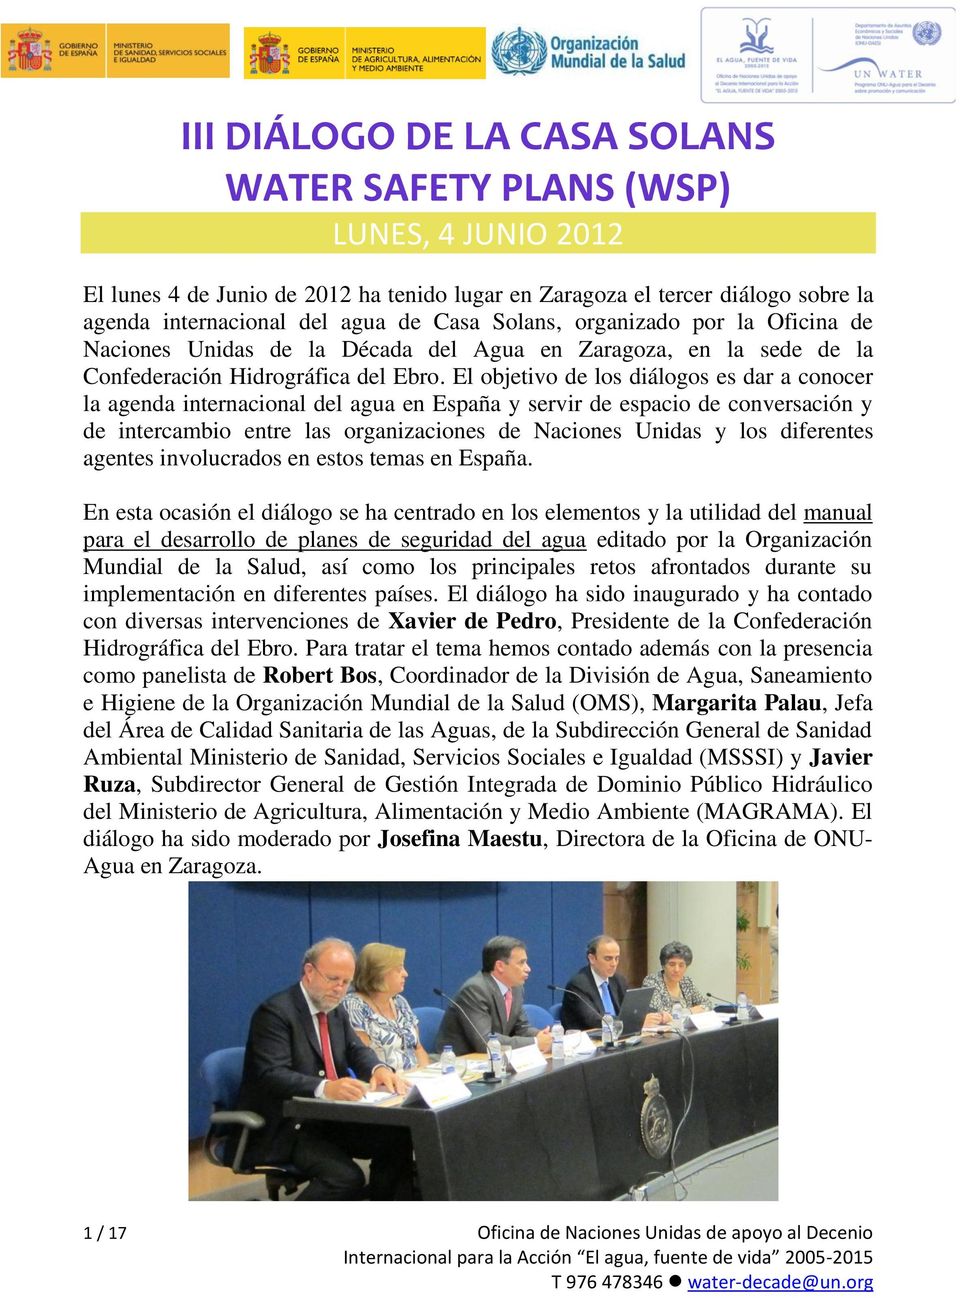 El objetivo de los diálogos es dar a conocer la agenda internacional del agua en España y servir de espacio de conversación y de intercambio entre las organizaciones de Naciones Unidas y los